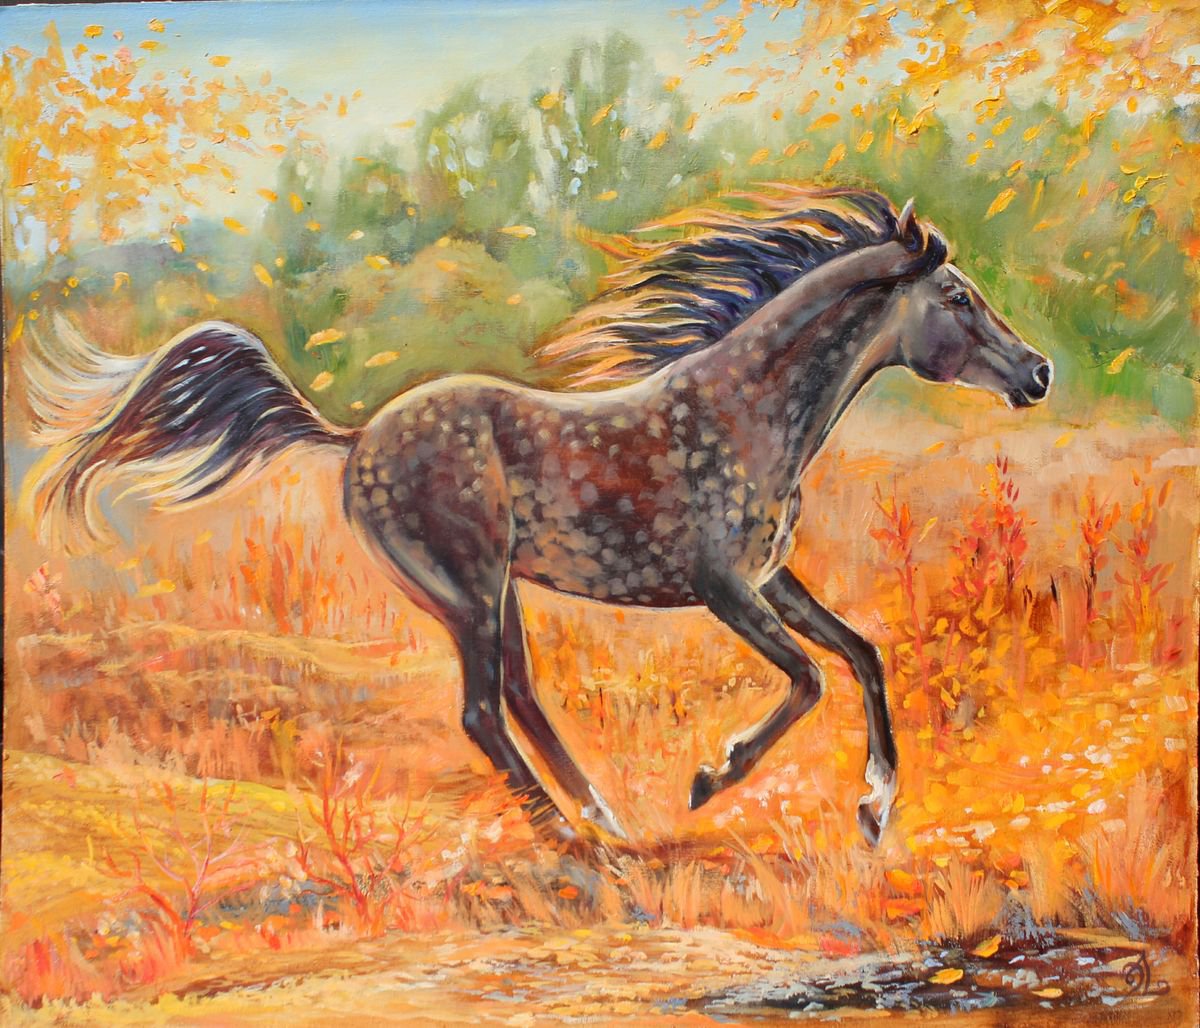 Horse by Elina Vetrova